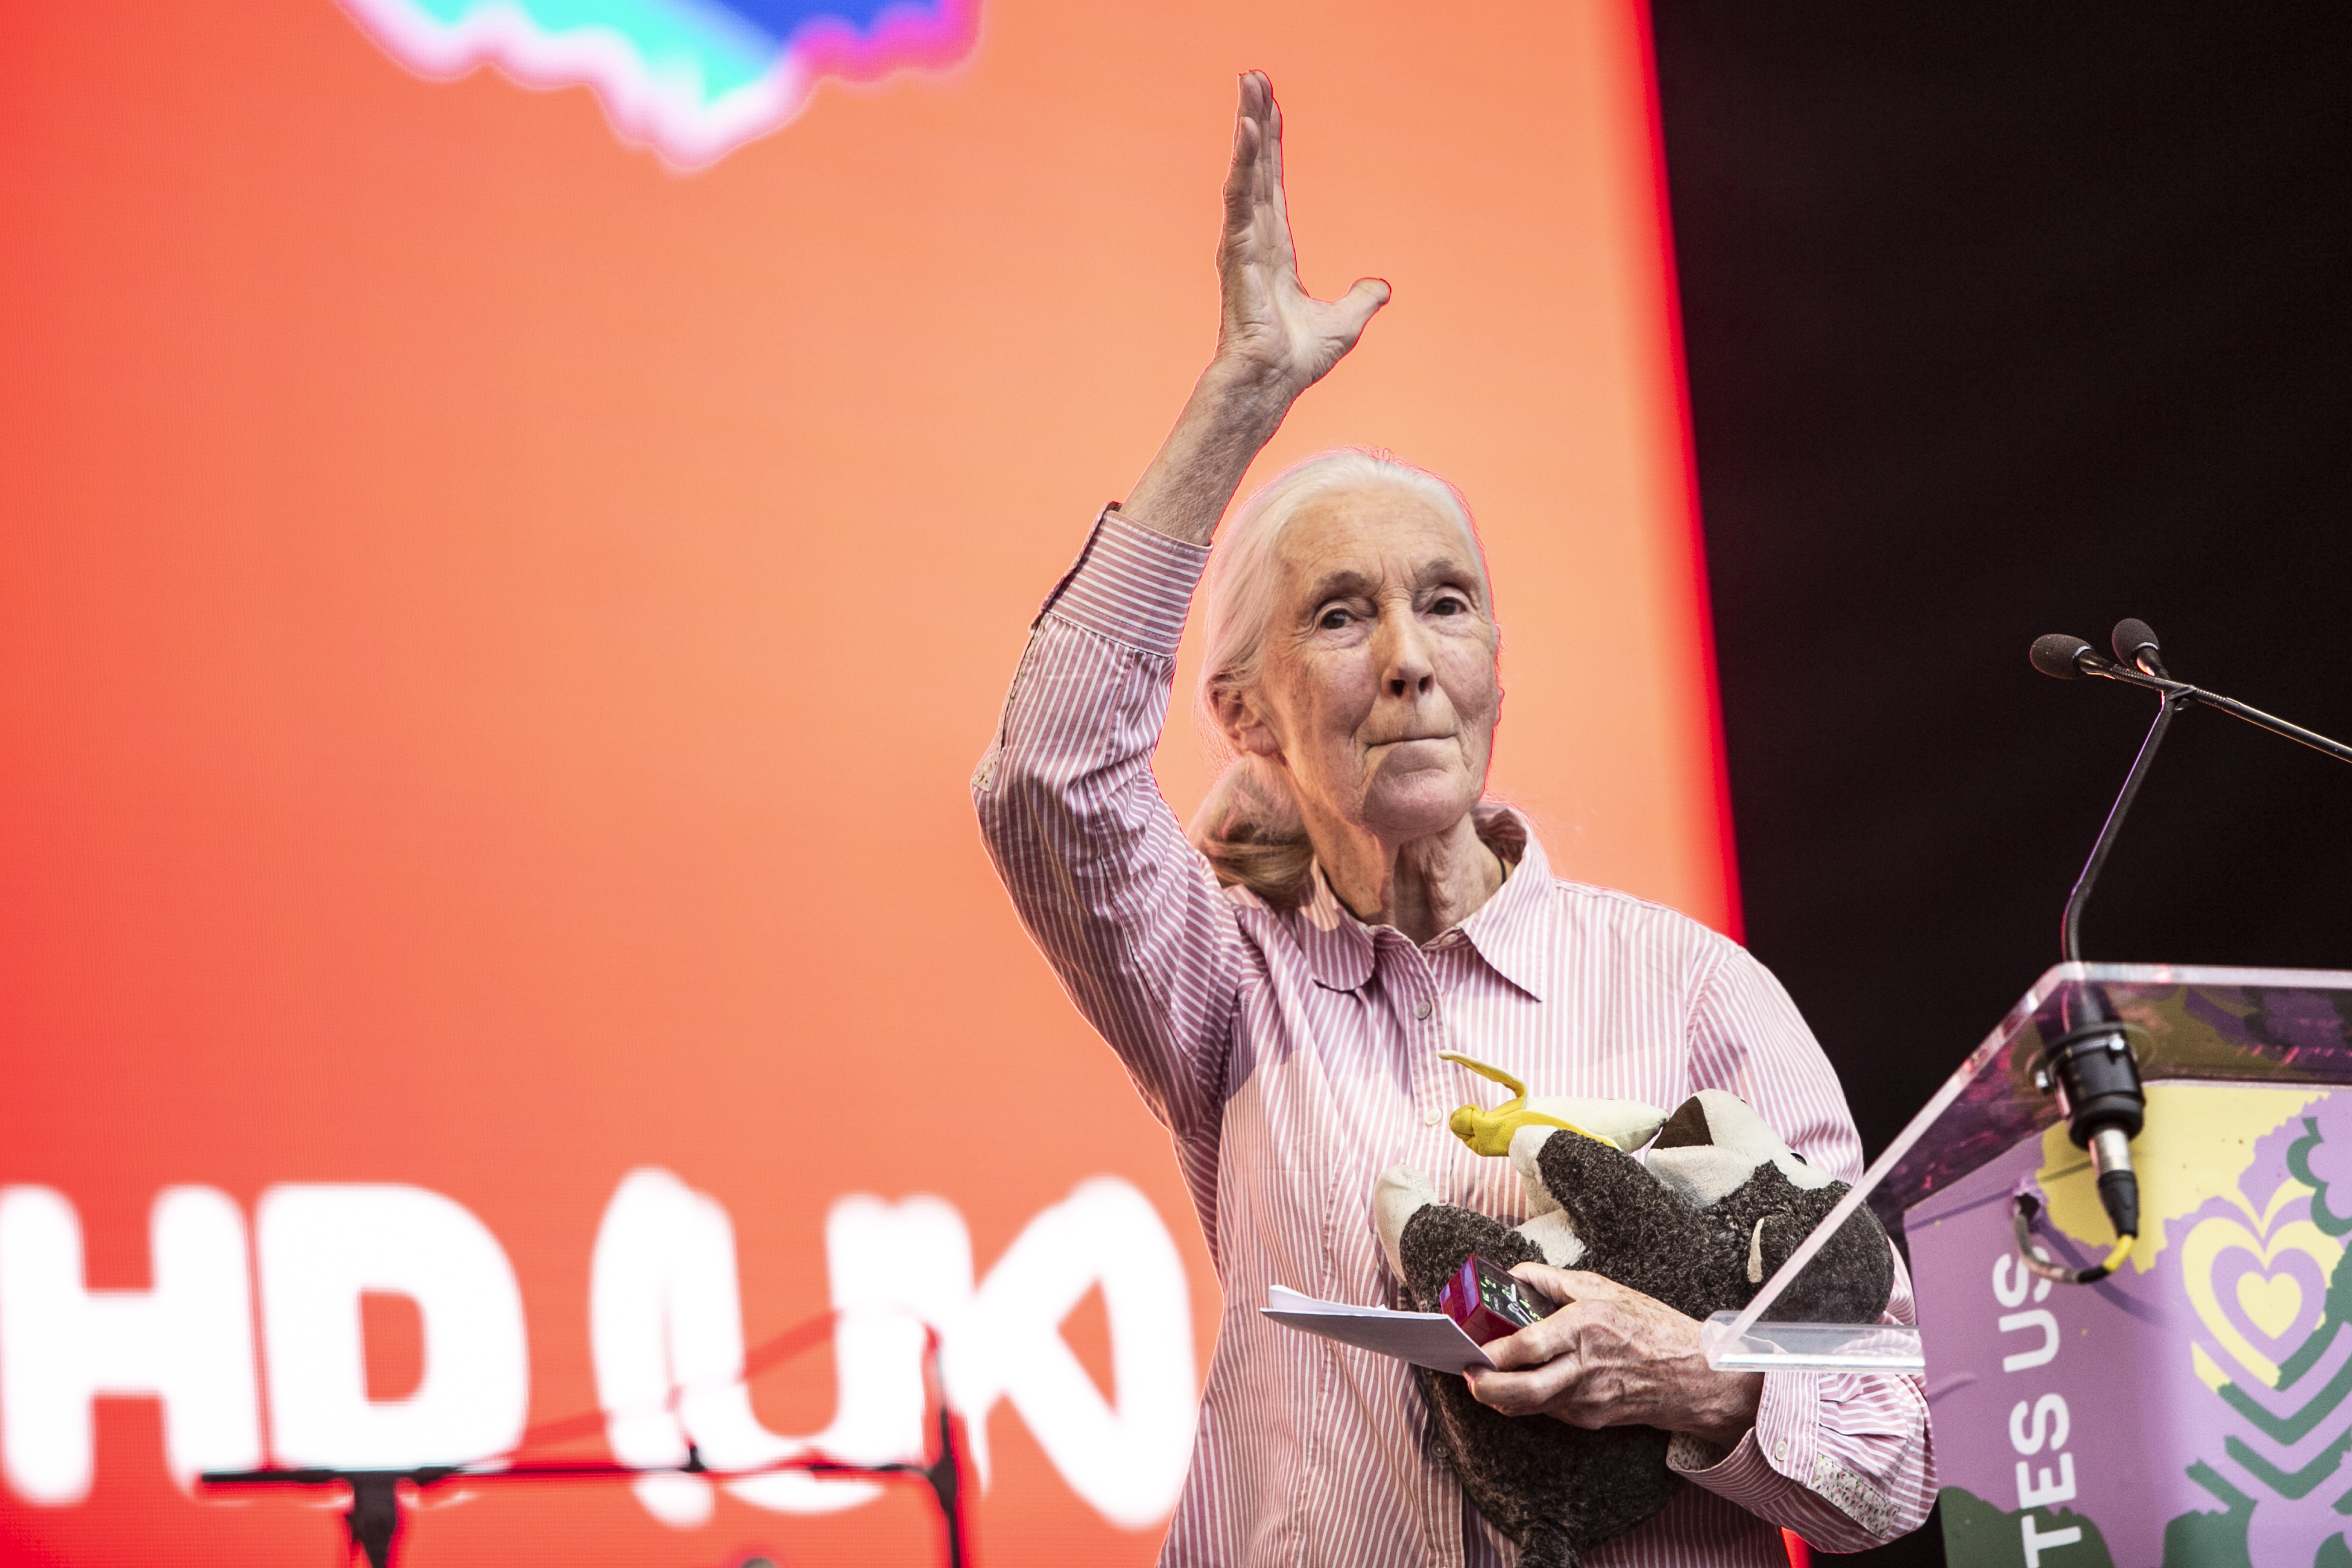 Jane Goodall a Szigeten: A fiatalok a reményeim, akik megértik a problémákat, és erősek, hogy megváltoztassák a világot